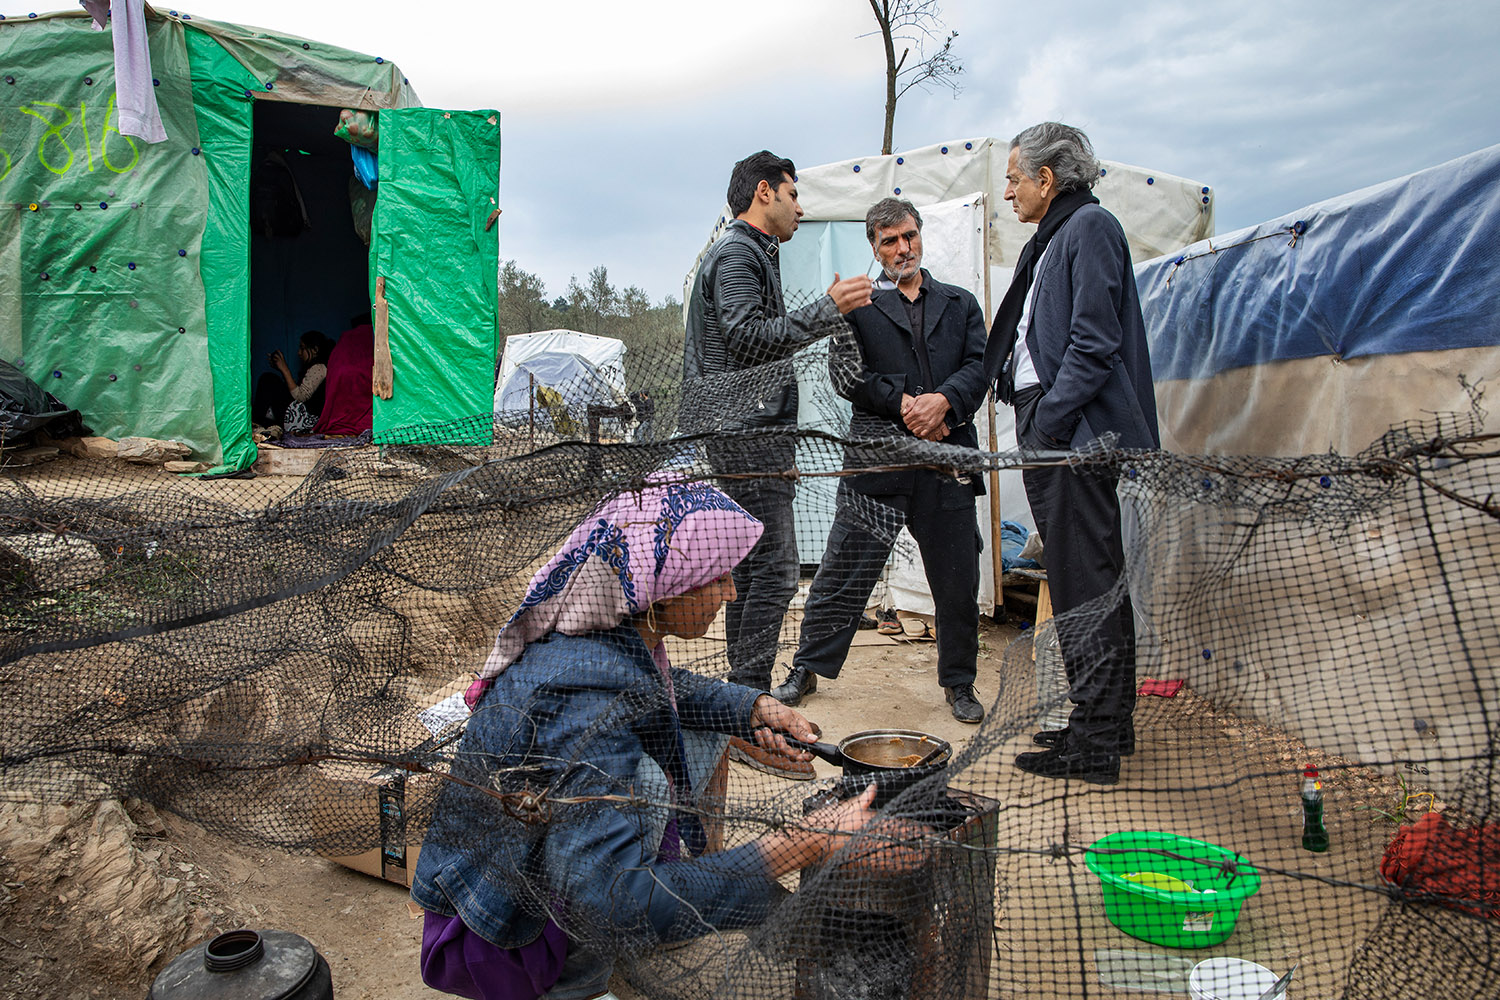 Bernard-Henri Lévy parle avec deux hommes au milieu des tentes du camp de Moria à Lesbos.